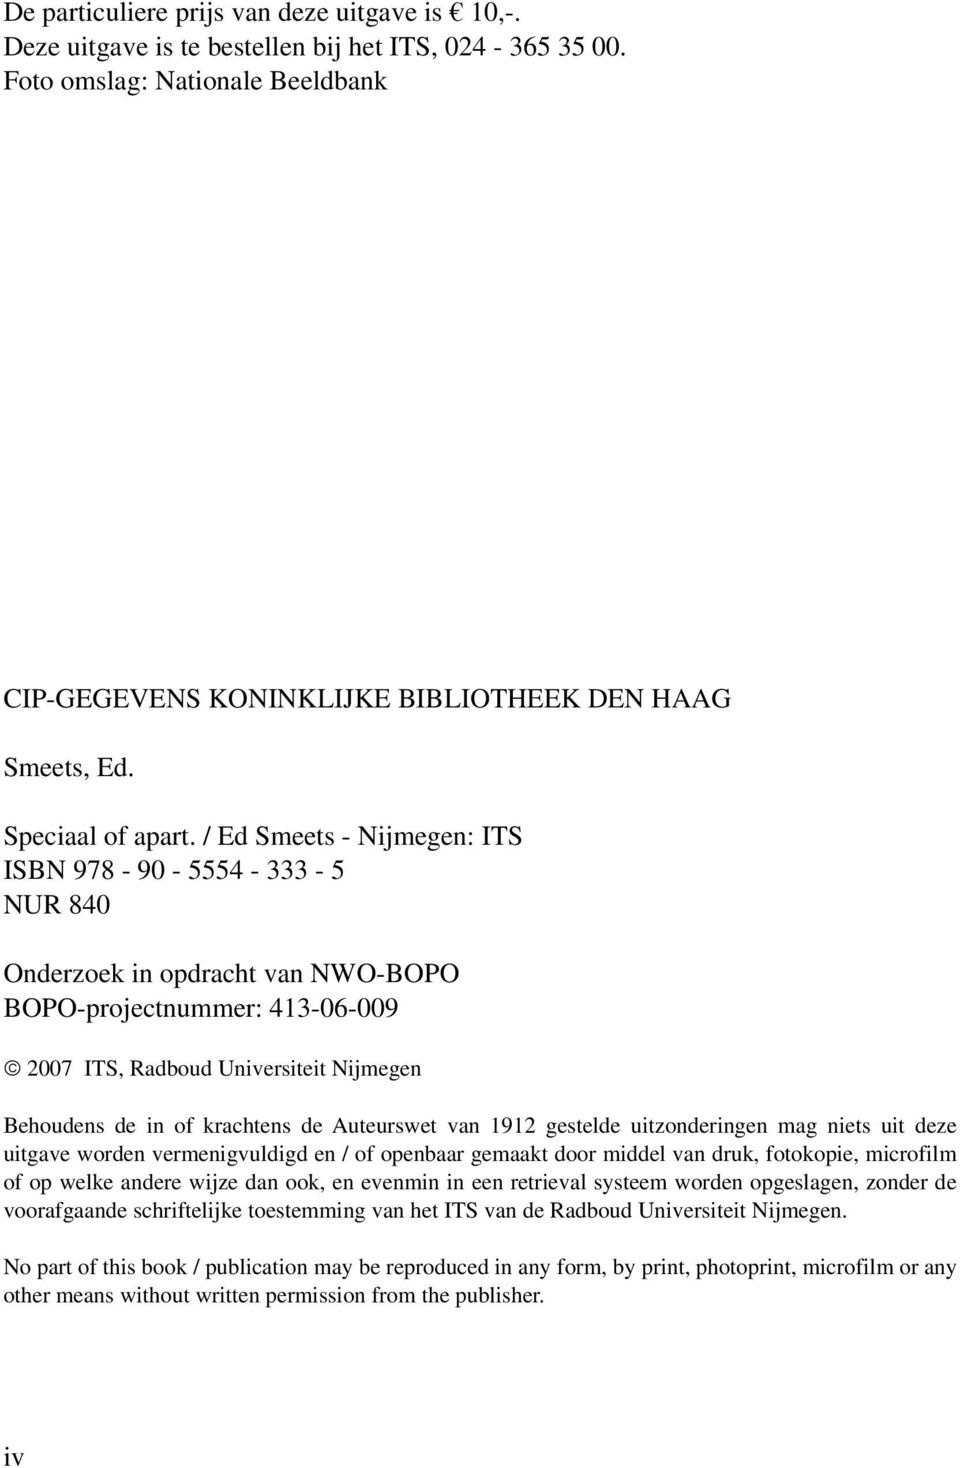 / Ed Smeets - Nijmegen: ITS ISBN 978-90 - 5554-333 - 5 NUR 840 Onderzoek in opdracht van NWO-BOPO BOPO-projectnummer: 413-06-009 2007 ITS, Radboud Universiteit Nijmegen Behoudens de in of krachtens